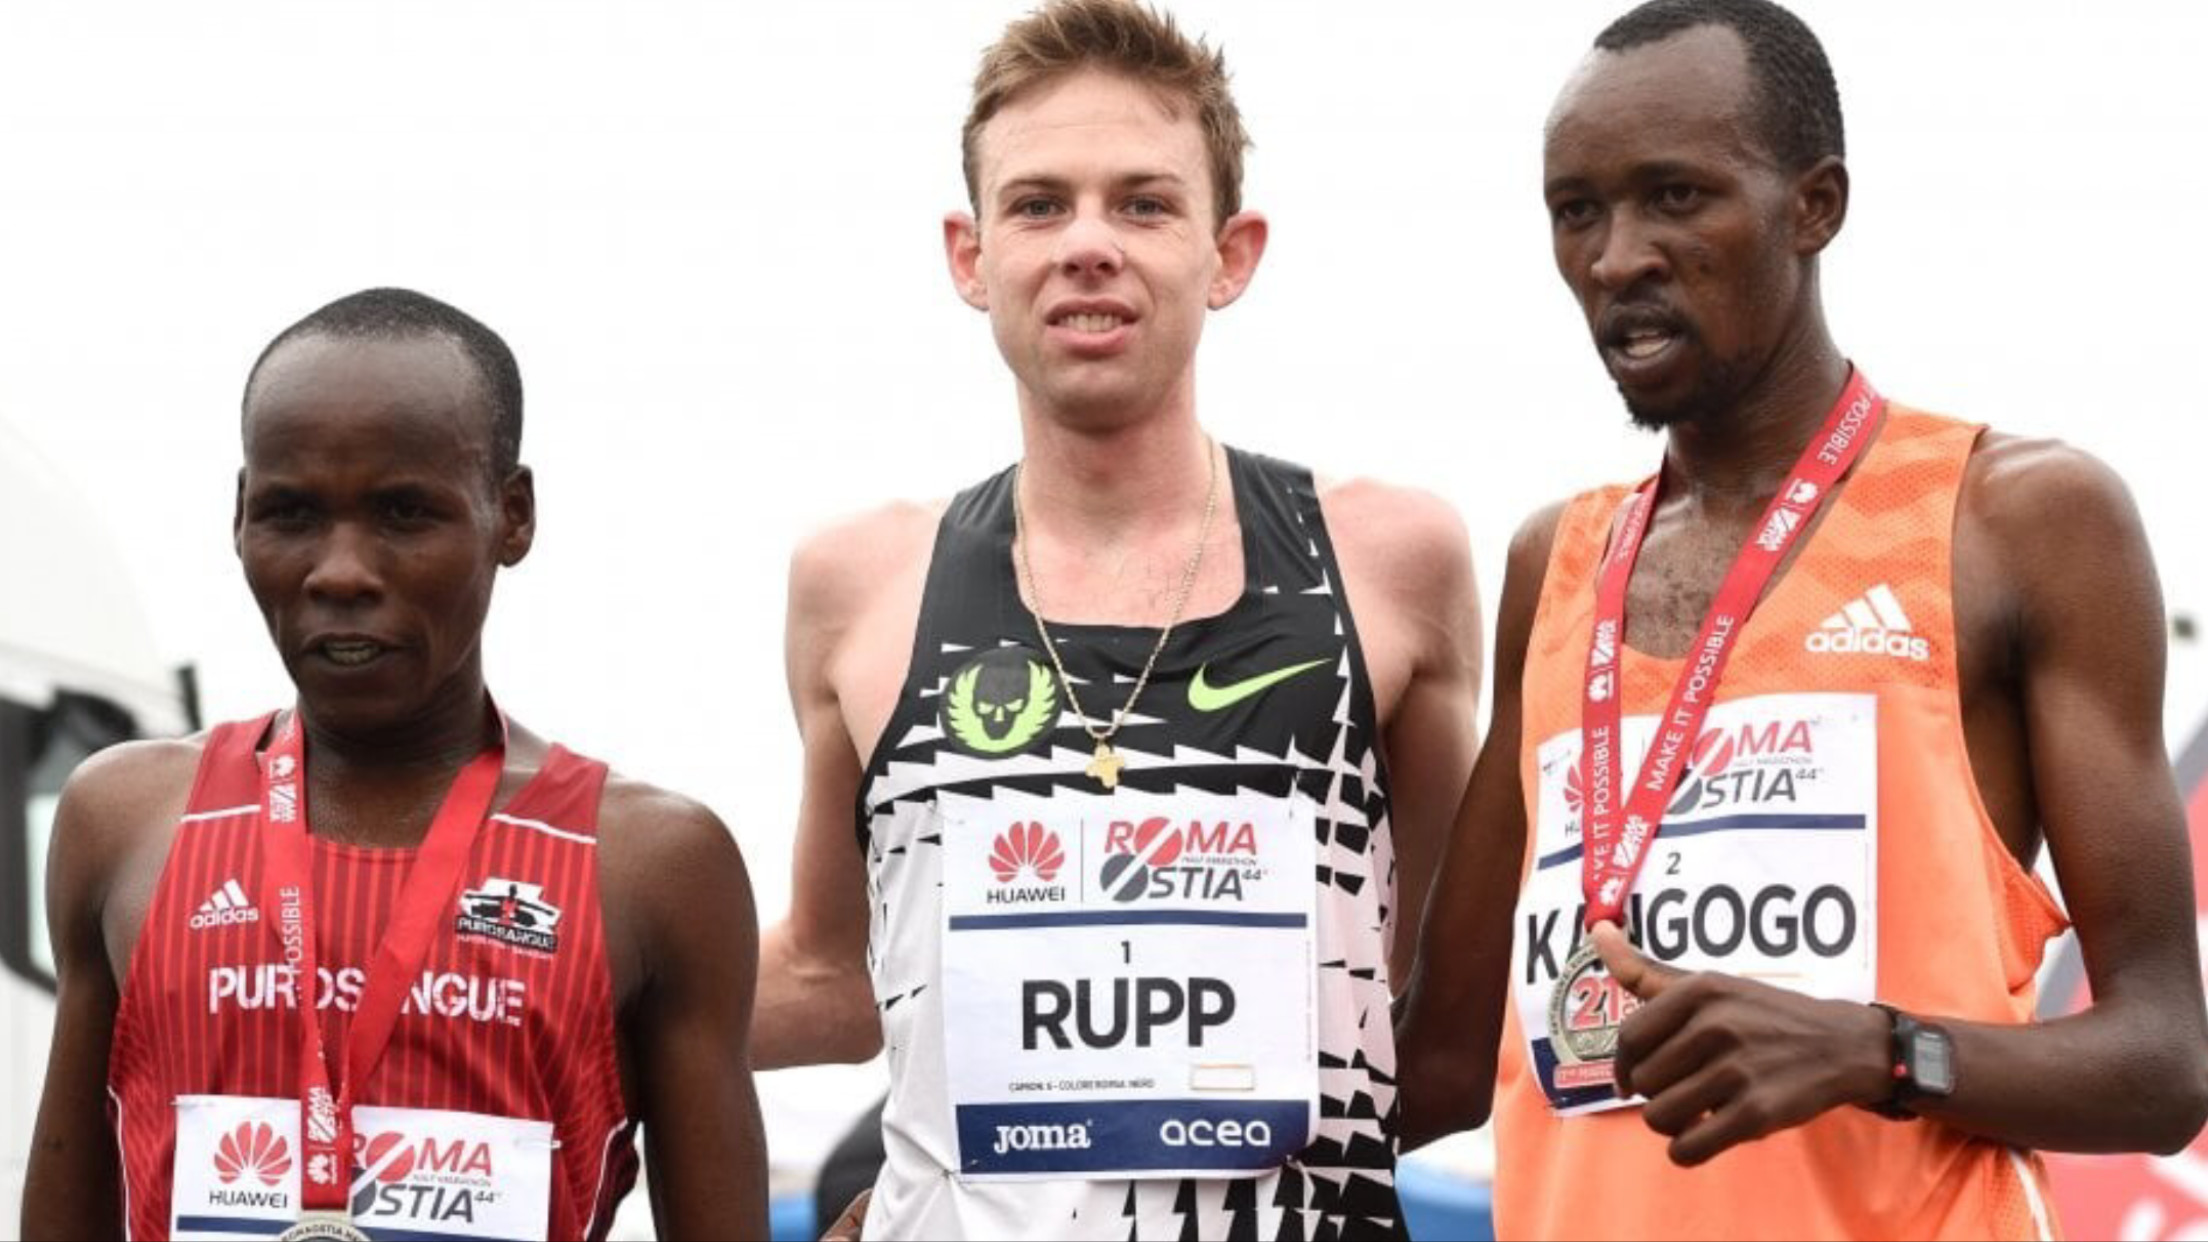 Galen Rupp runs first sub 60 to win 44th annual Roma Ostia Half Marathon